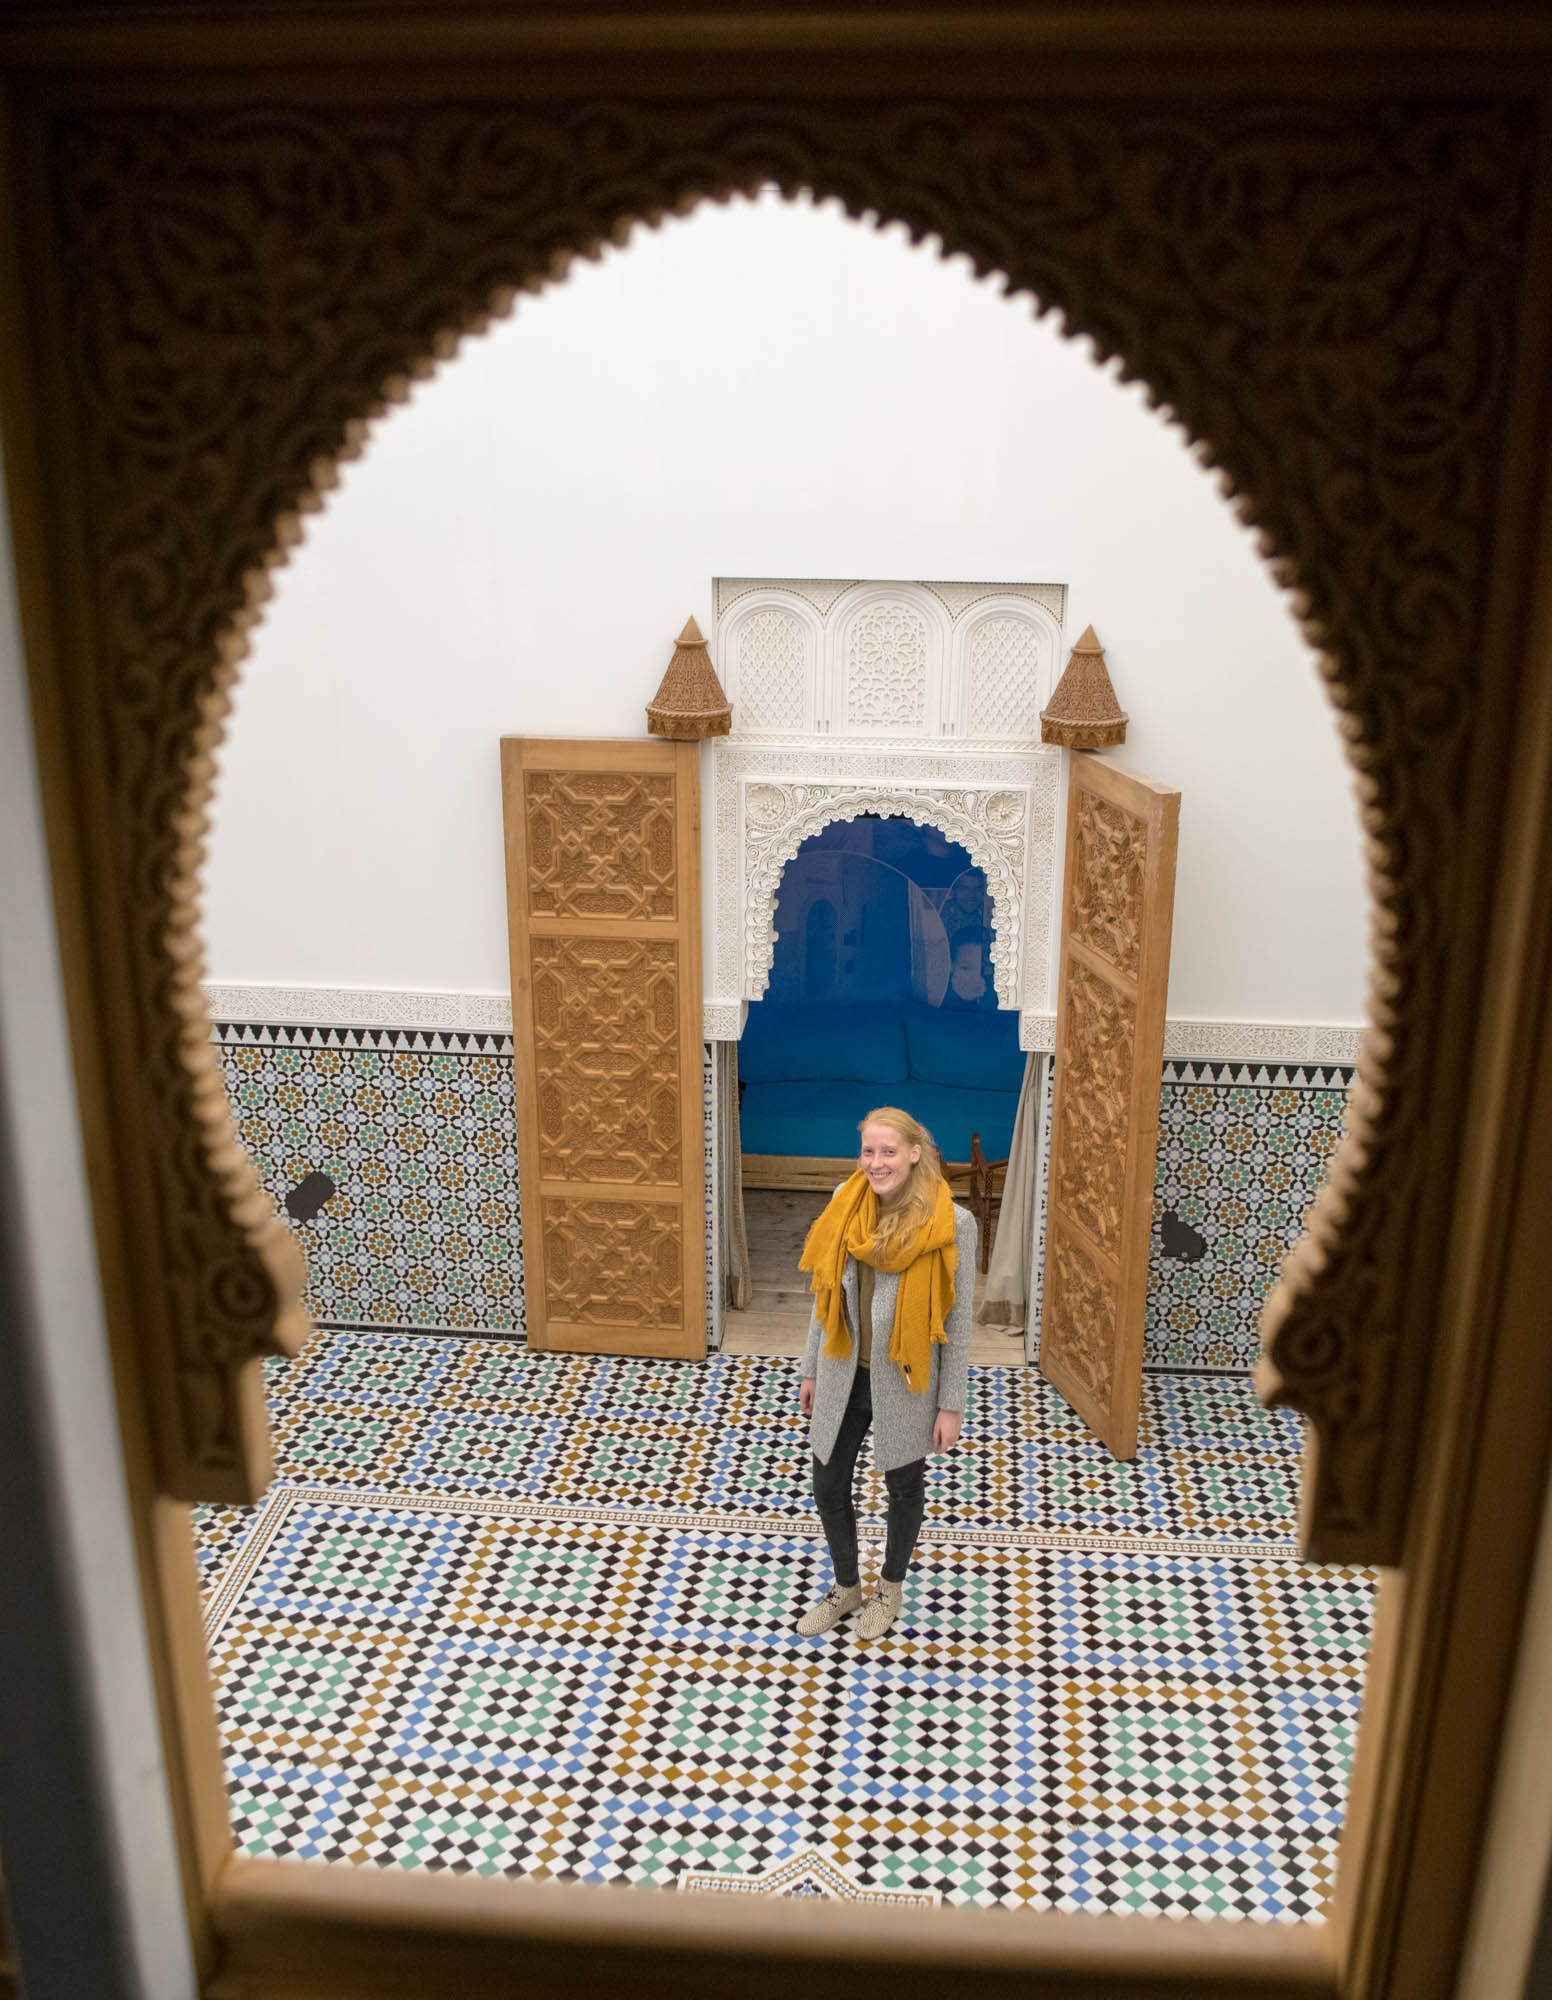 Kindprogramma ZieZo Marokko in Tropenmuseum Junior